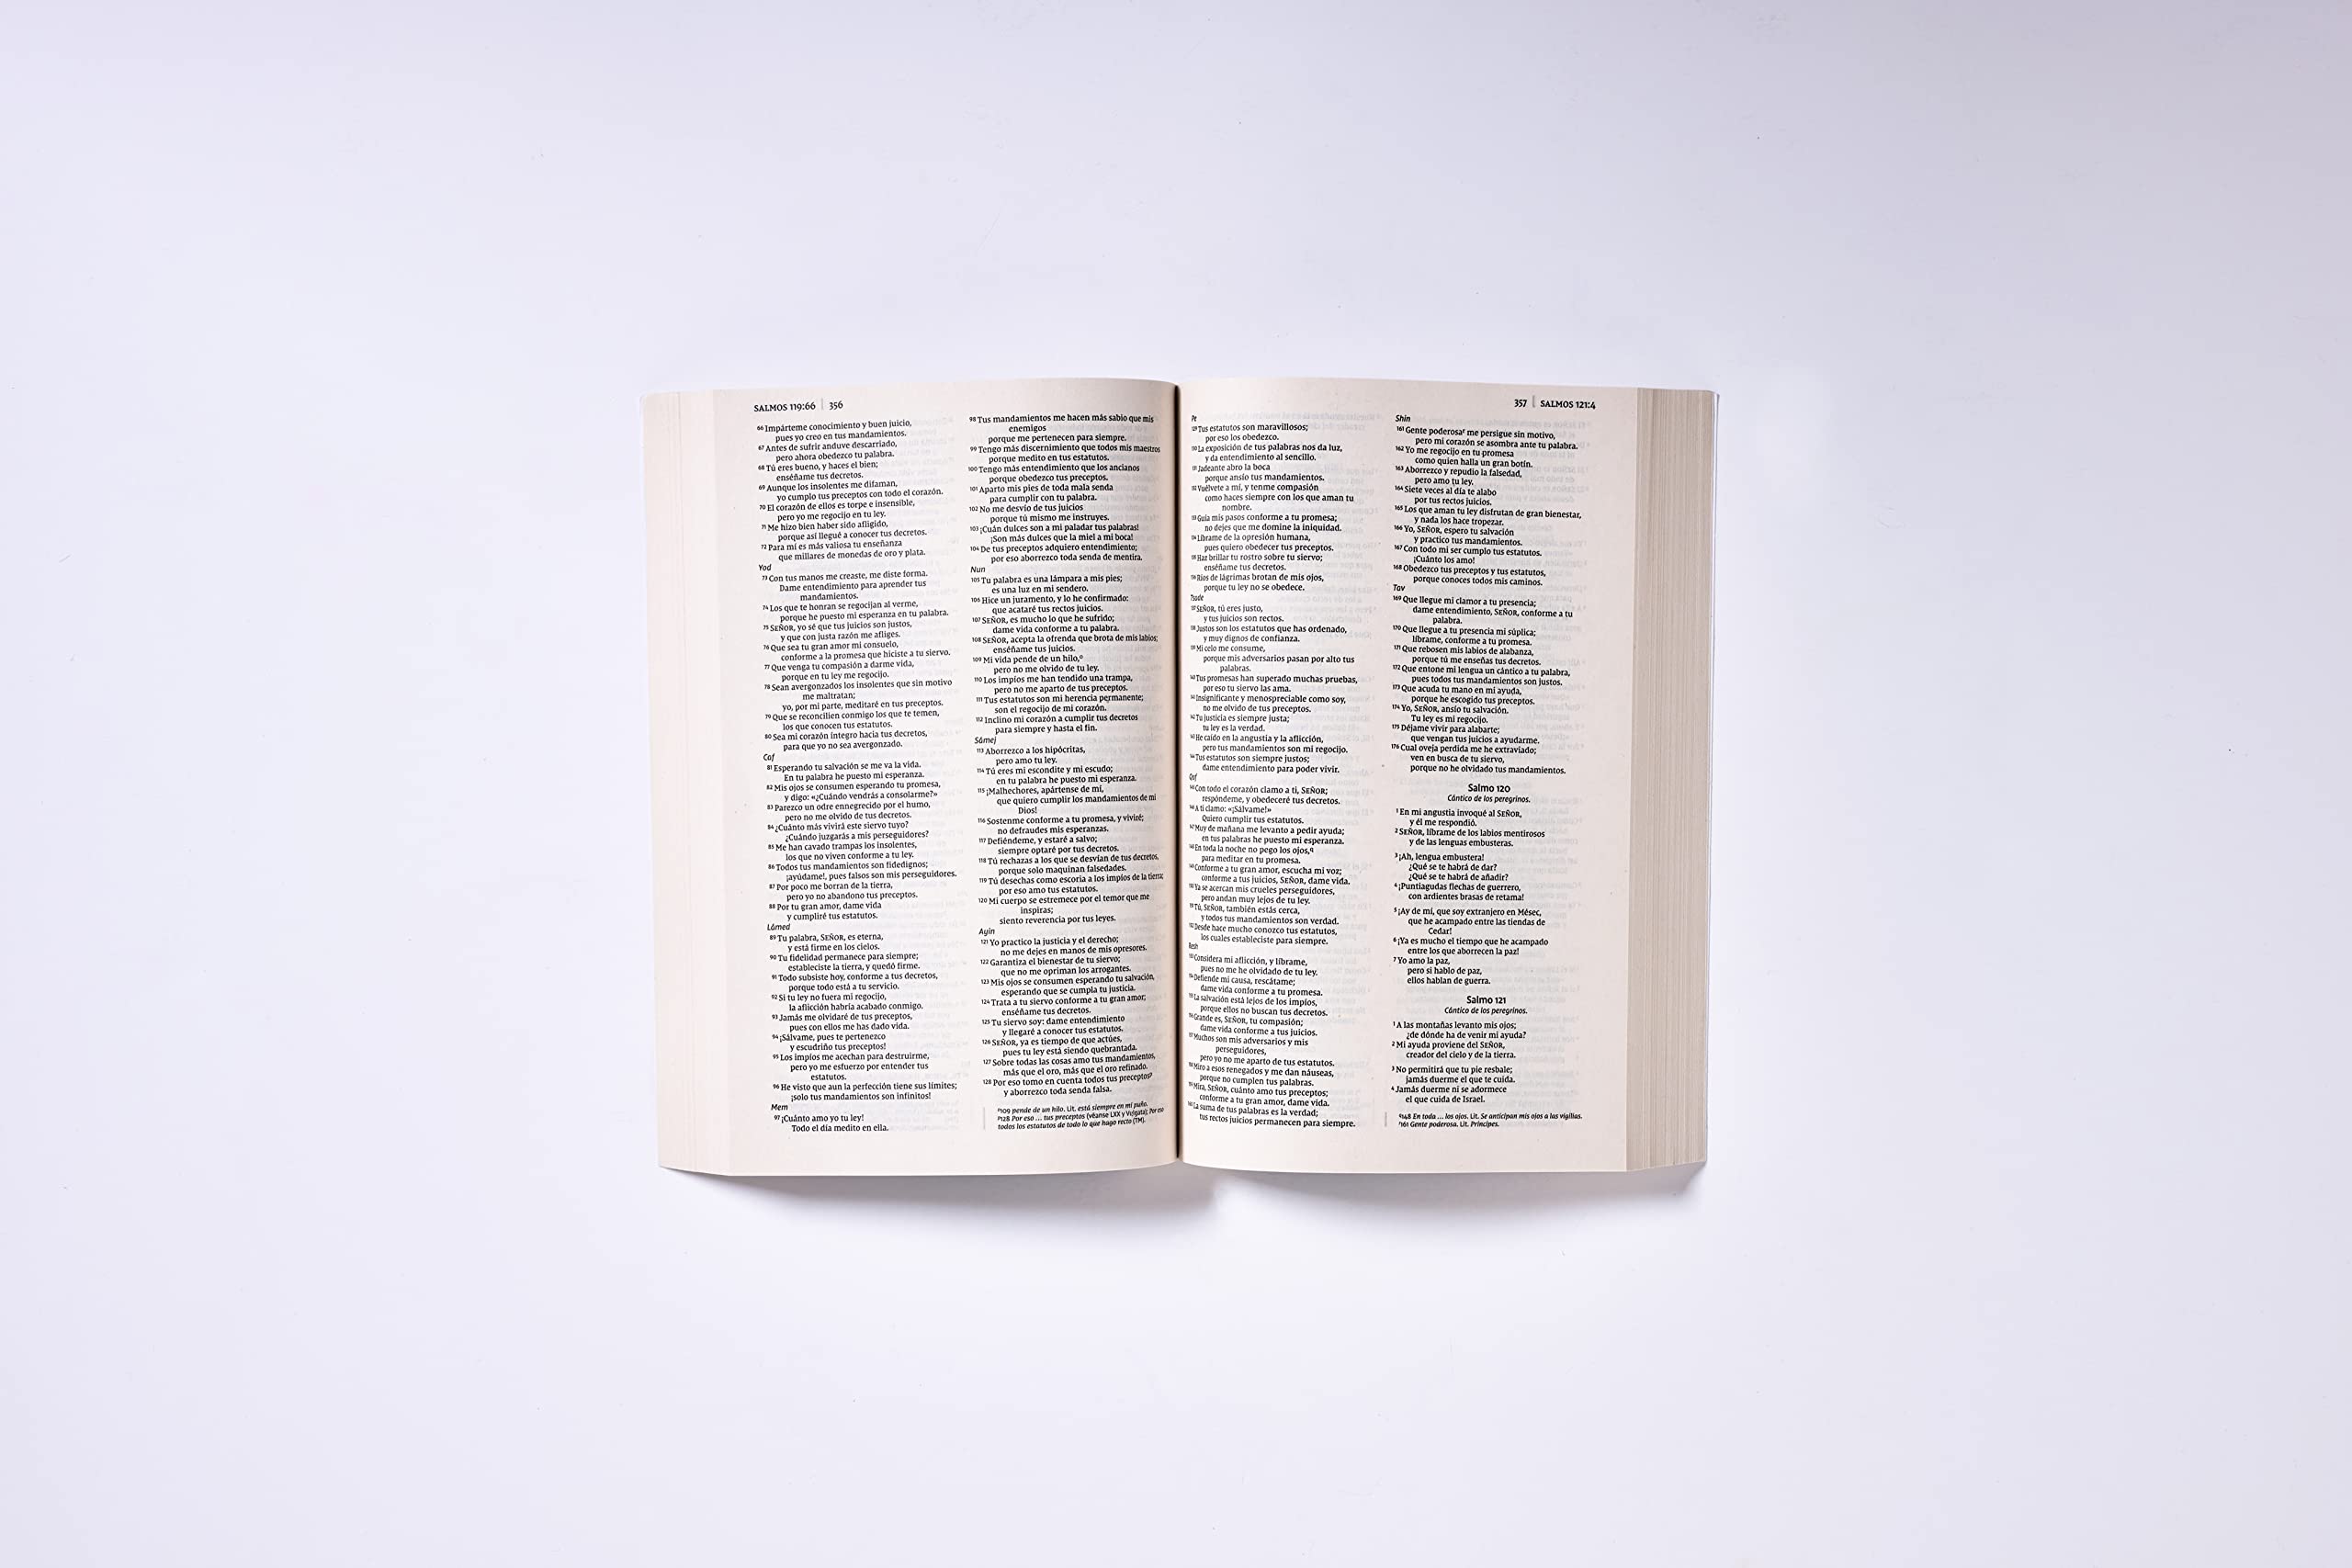 Biblia NVI, Edición económica, Tapa Rústica /Spanish Holy Bible NVI, Economy Edition, Softcover (Spanish Edition)